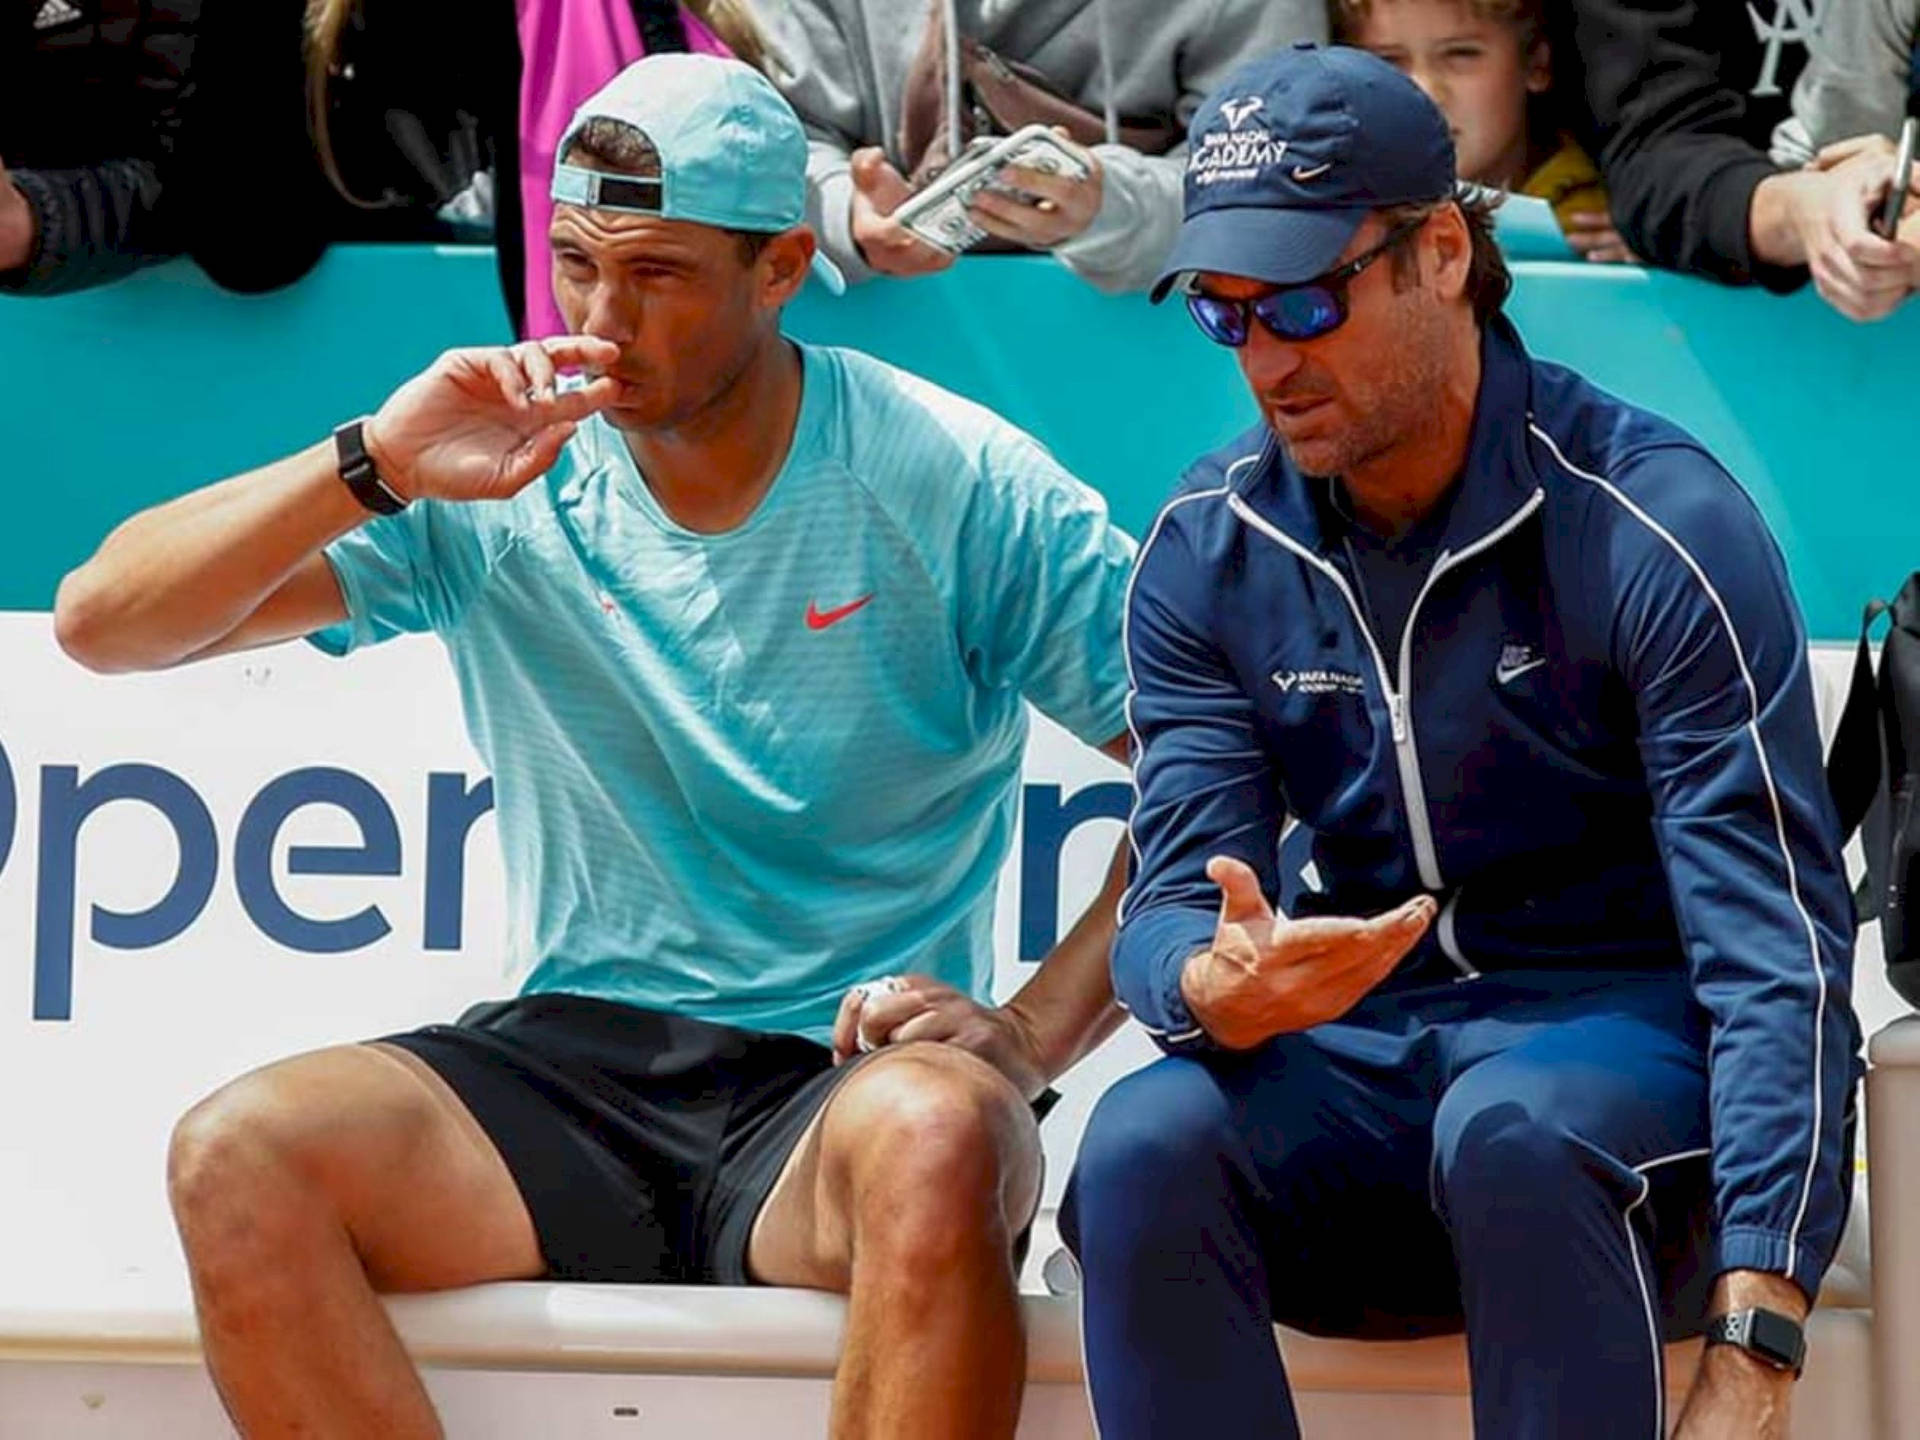 Carlos Moya peger på banen med Rafael Nadal Wallpaper